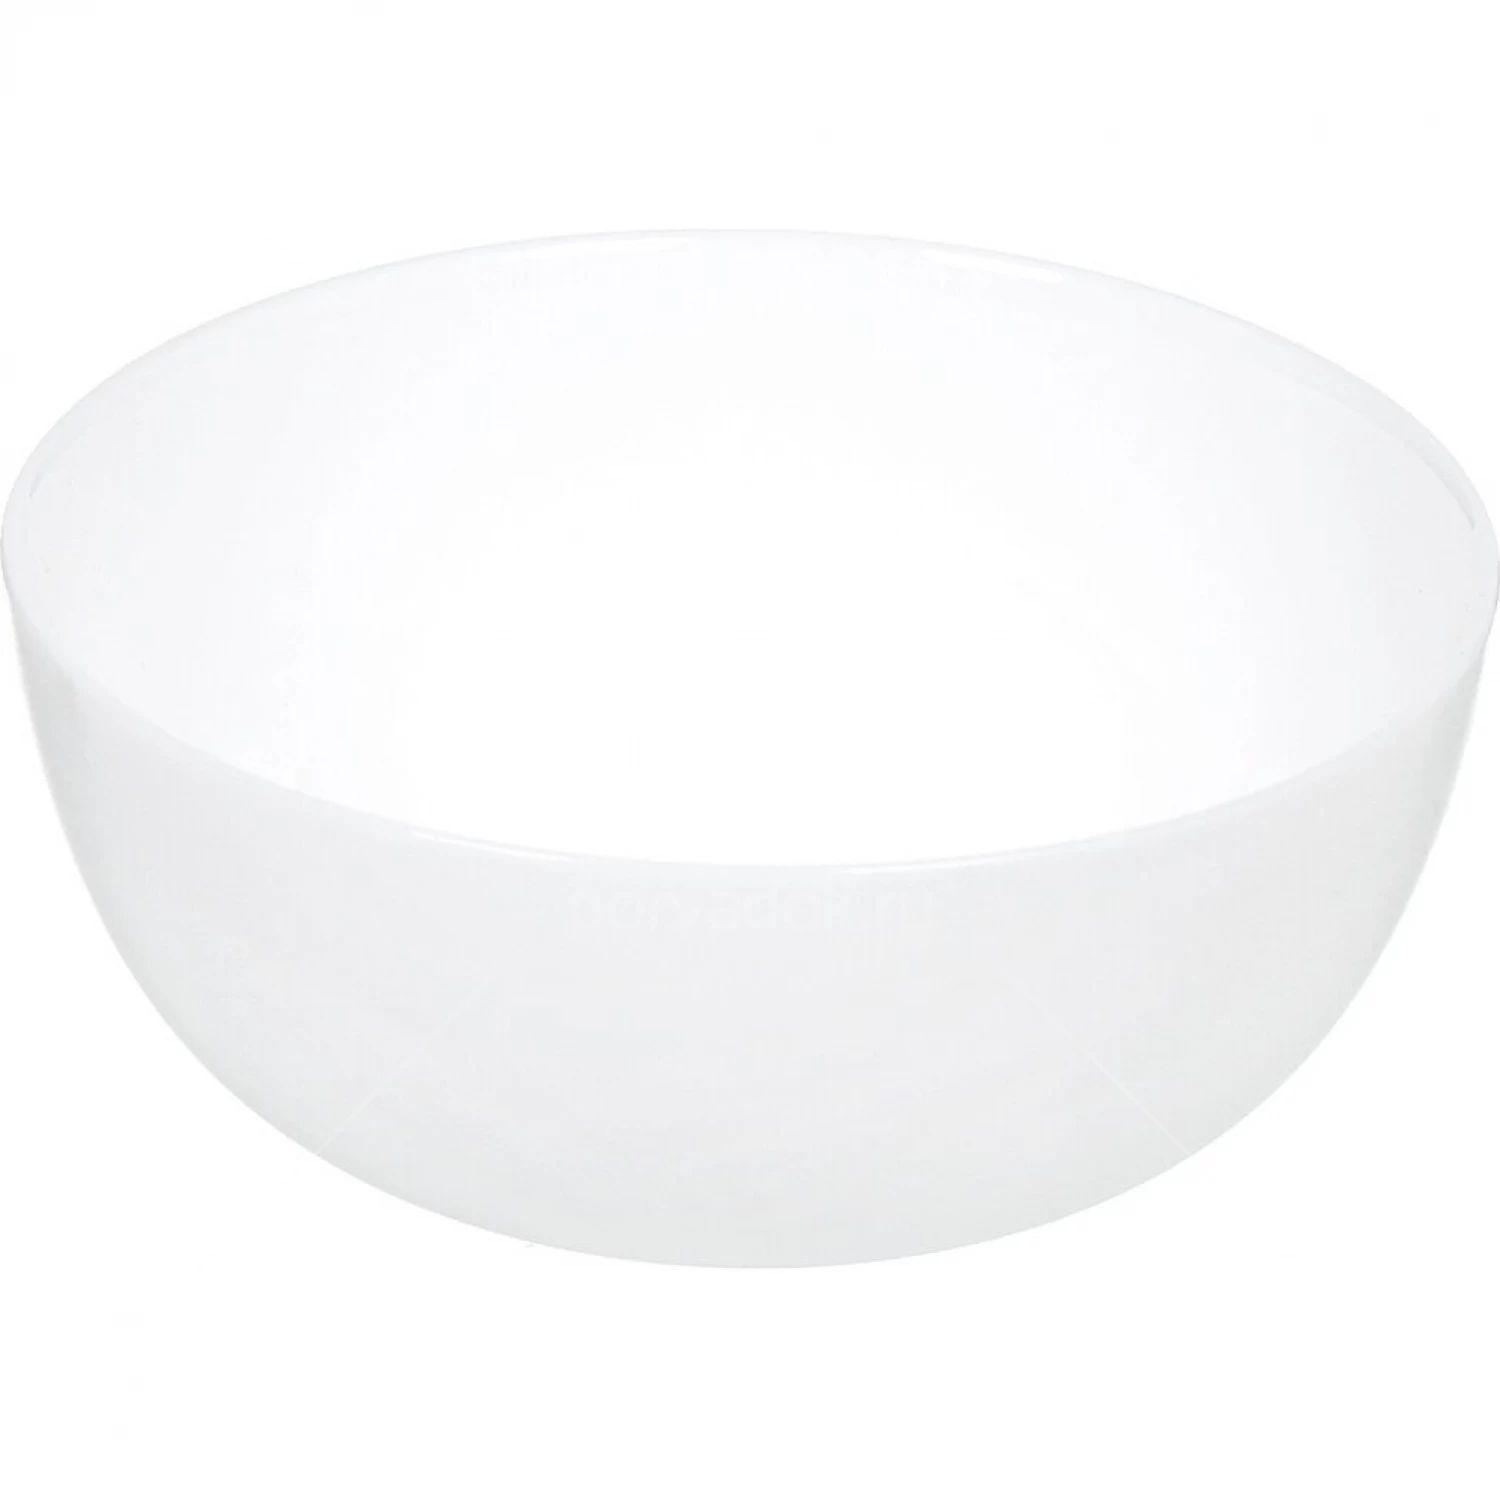 Салатник Luminarc "Дивали" d 12 см, стеклокерамика, белый цвет, ARC